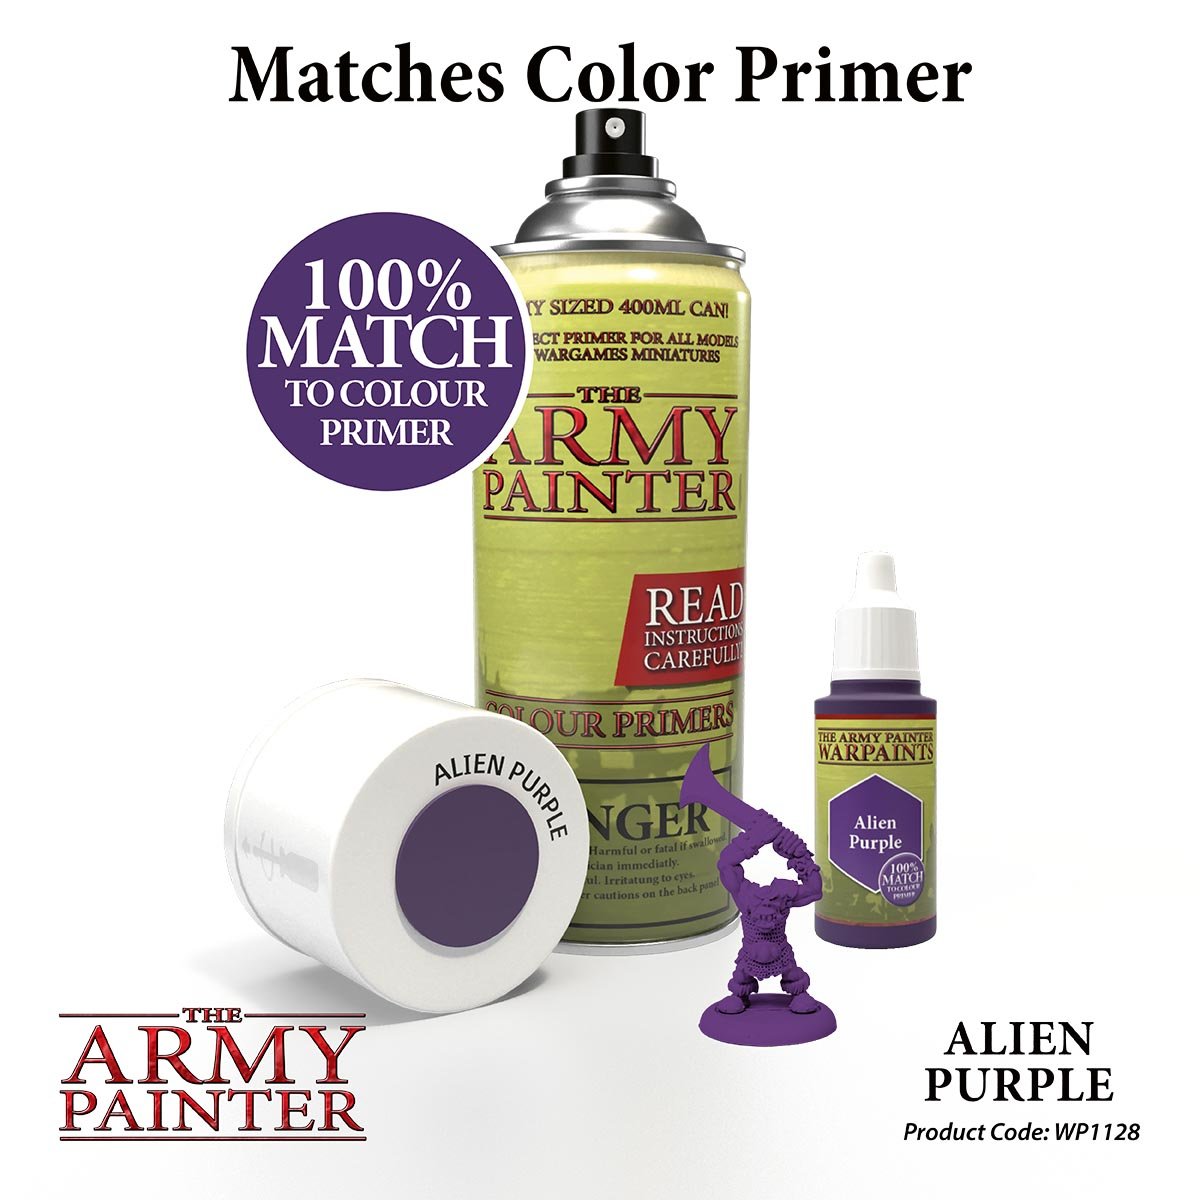 The Army Painter Warpaints WP1128 Alien Purple Acrylic Paint 18ml bottle